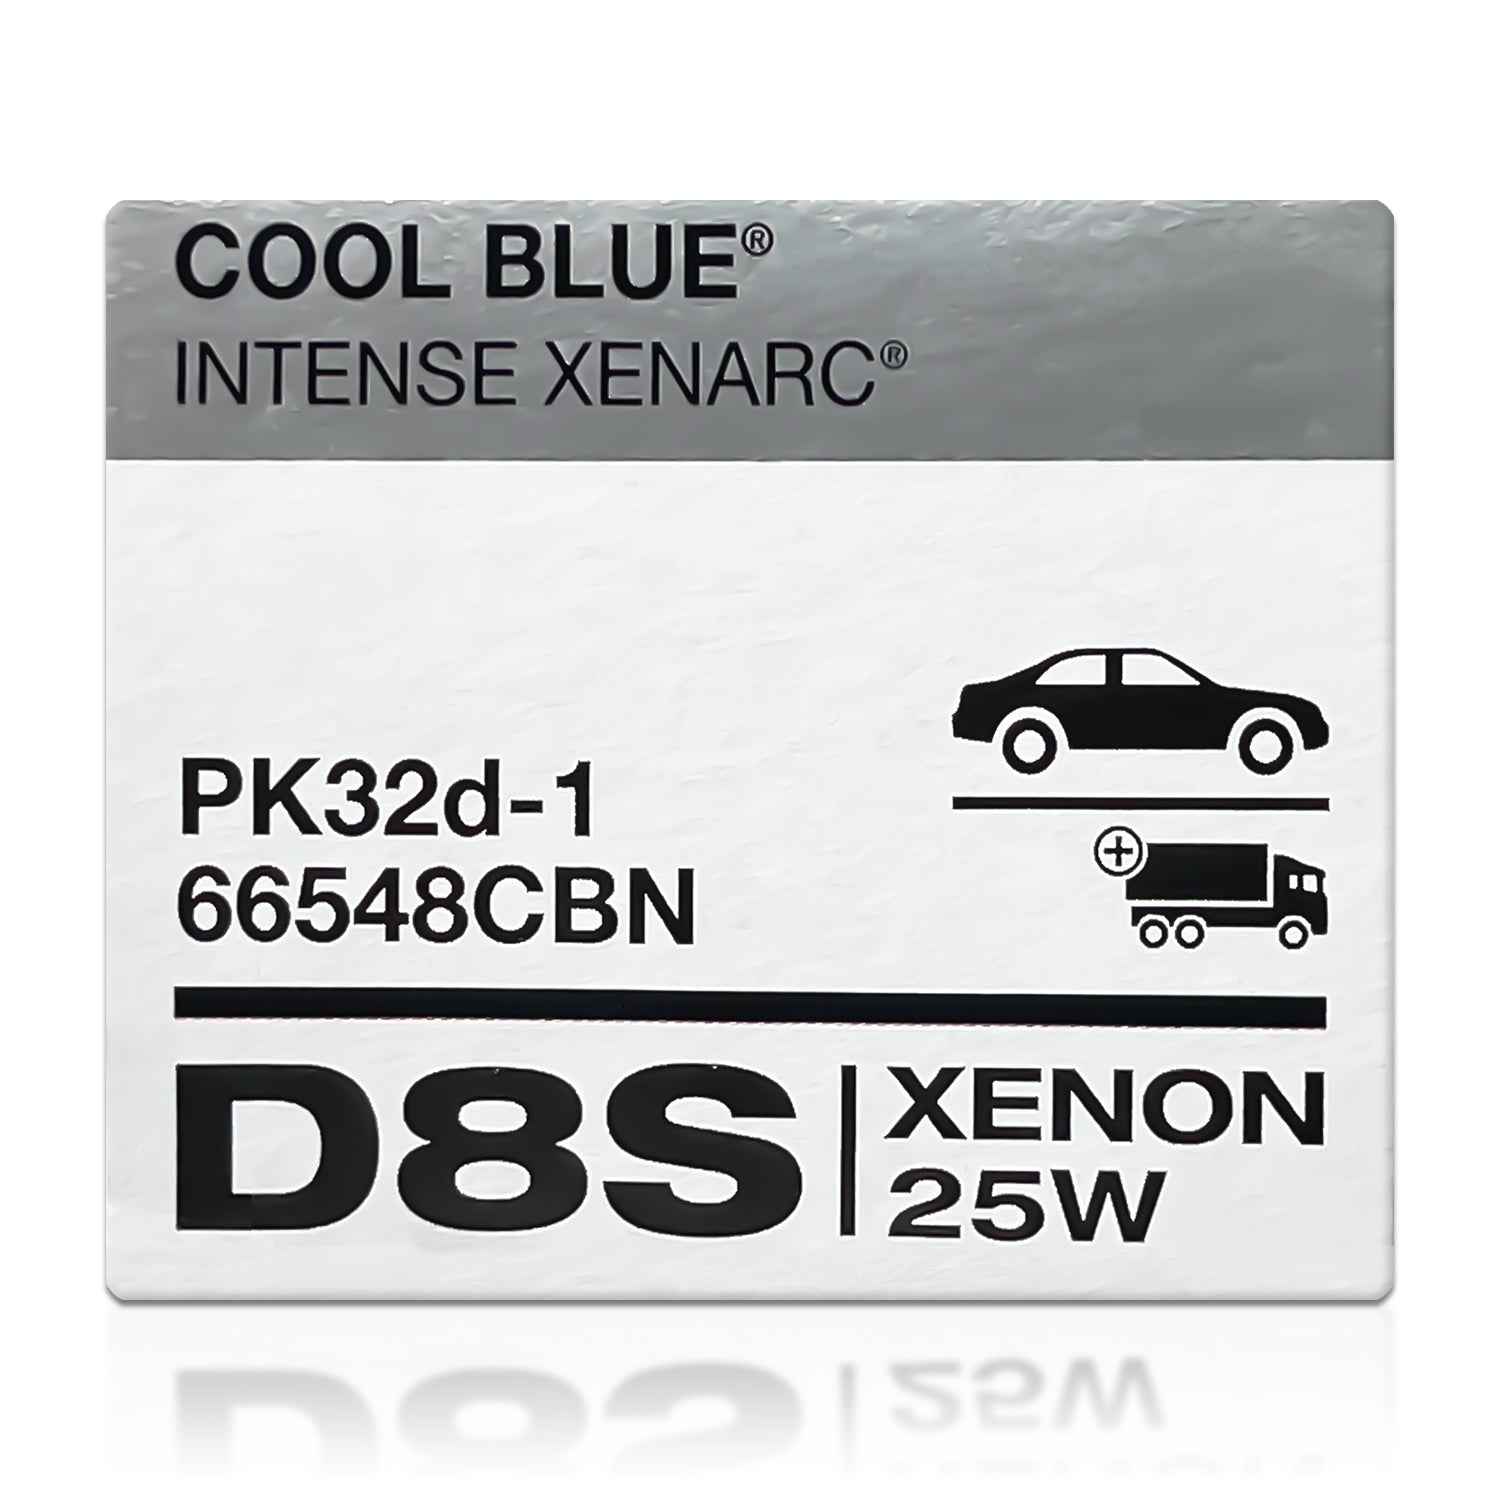 OSRAM XENARC COOL BLUE INTENSE NEXT GEN D3S HID Xenon Lamp